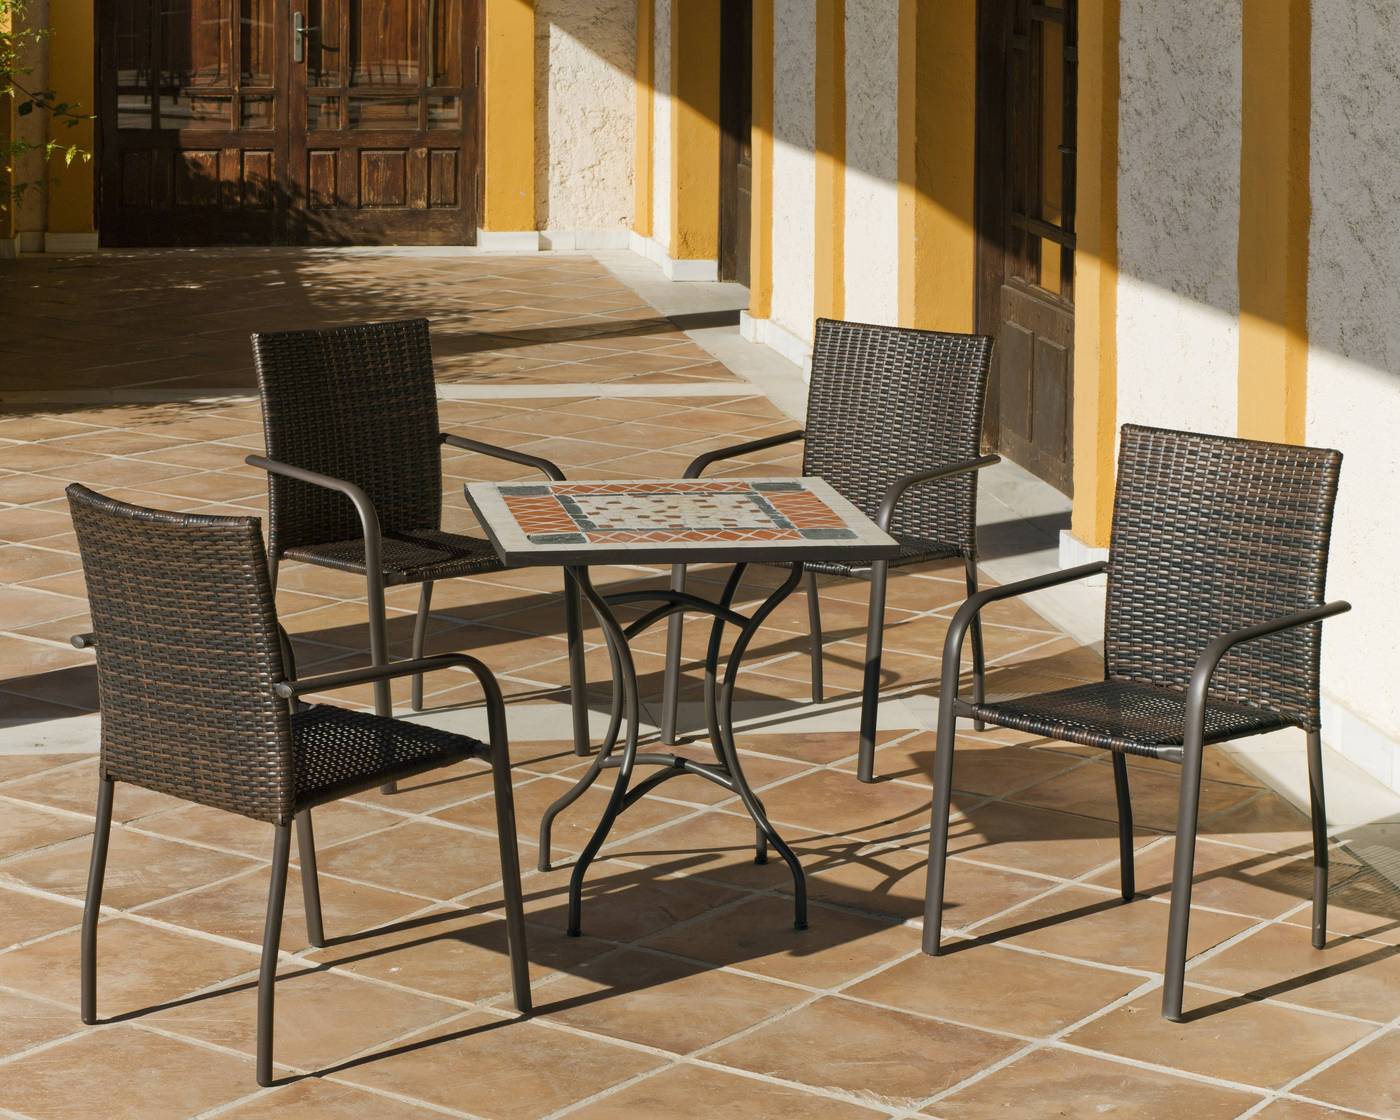 Conjunto de acero color bronce: mesa cuadrada de forja con tablero mosaico + 4 sillones de acero y ratán sintético